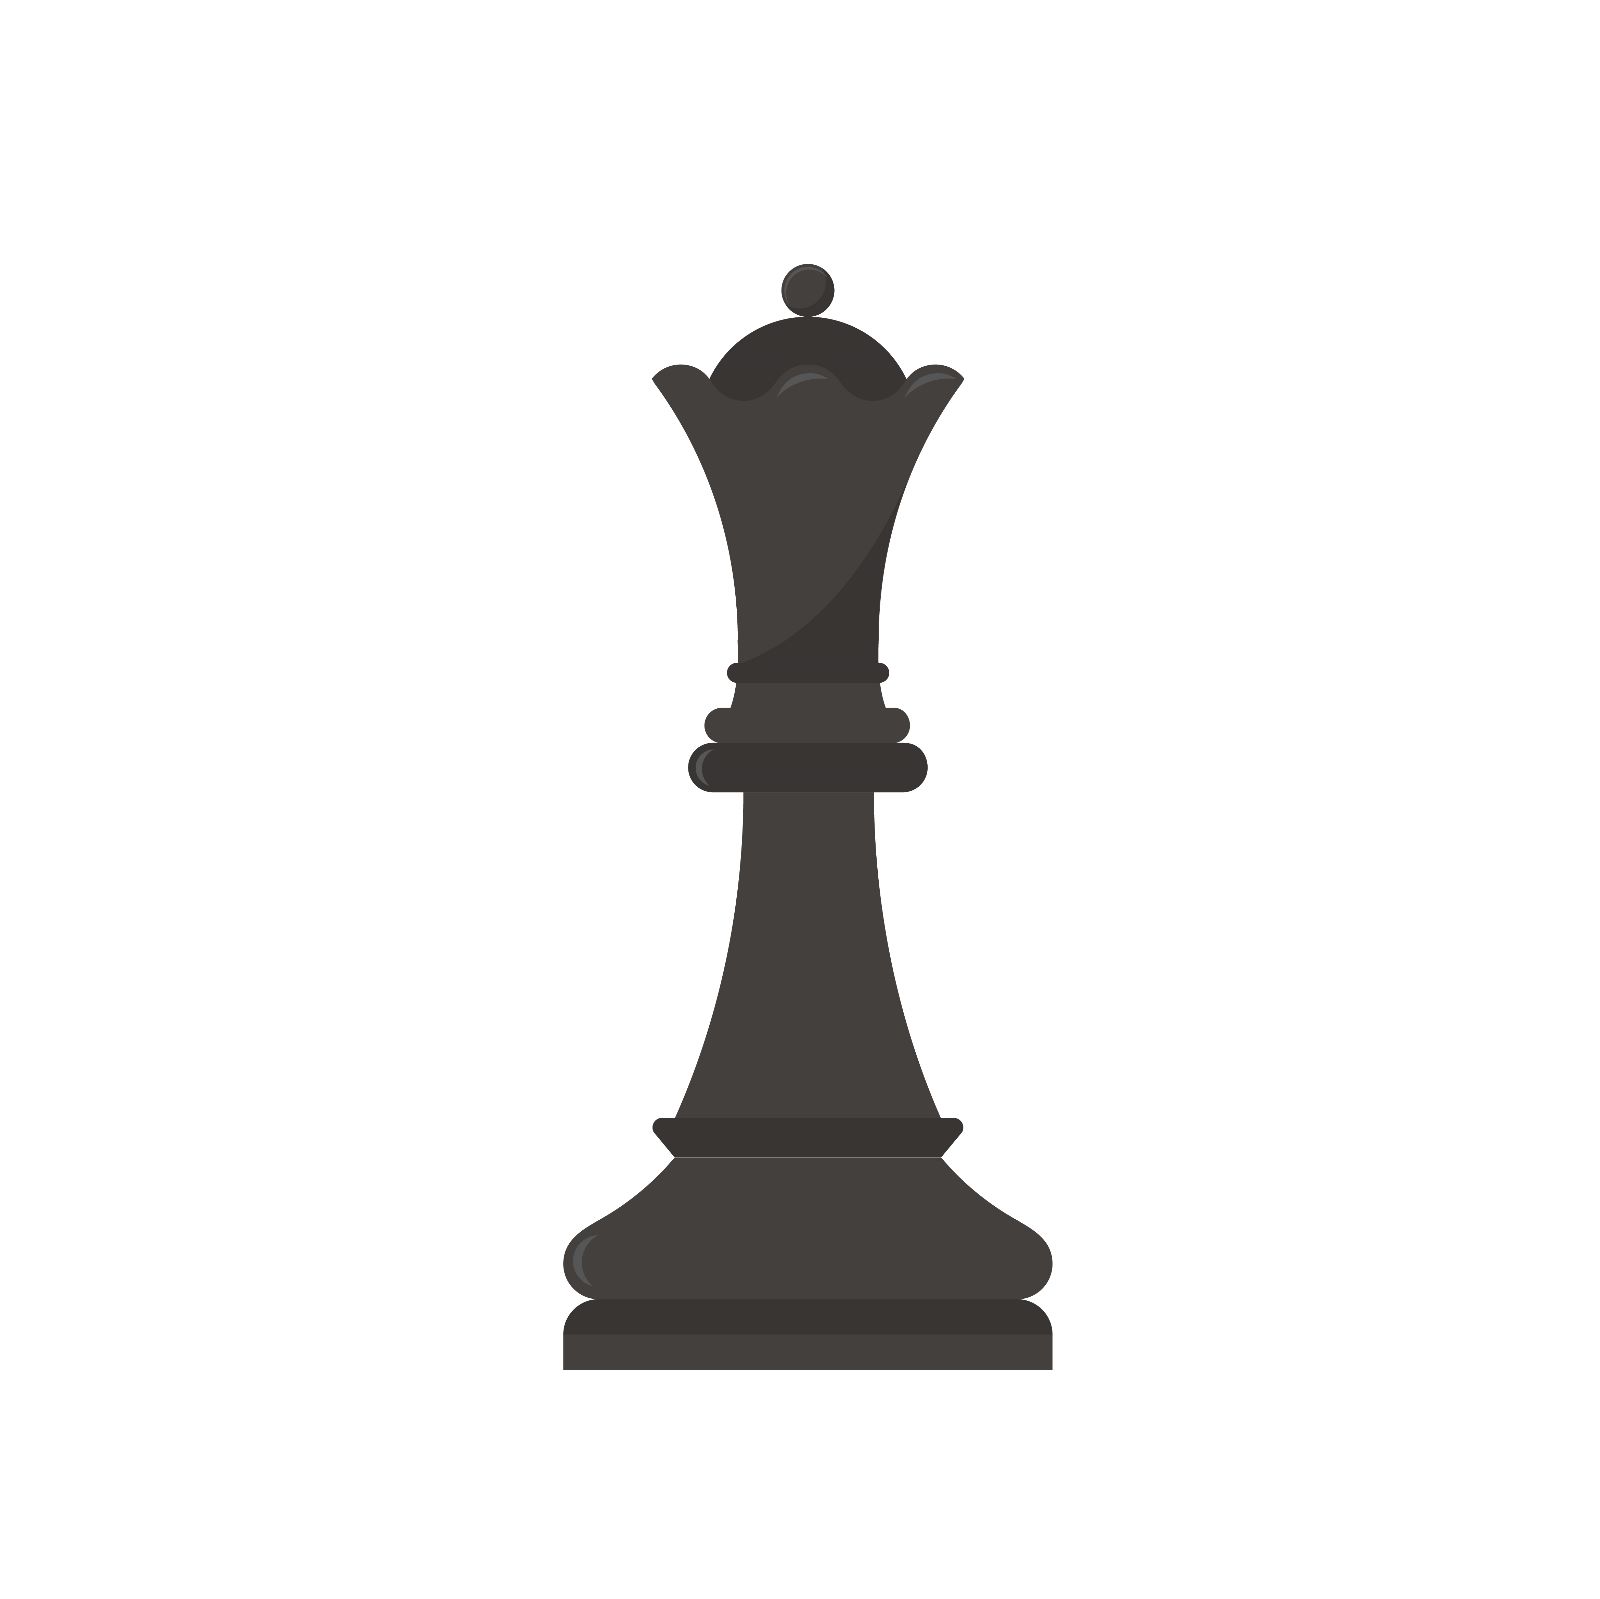 dama_ajedrez